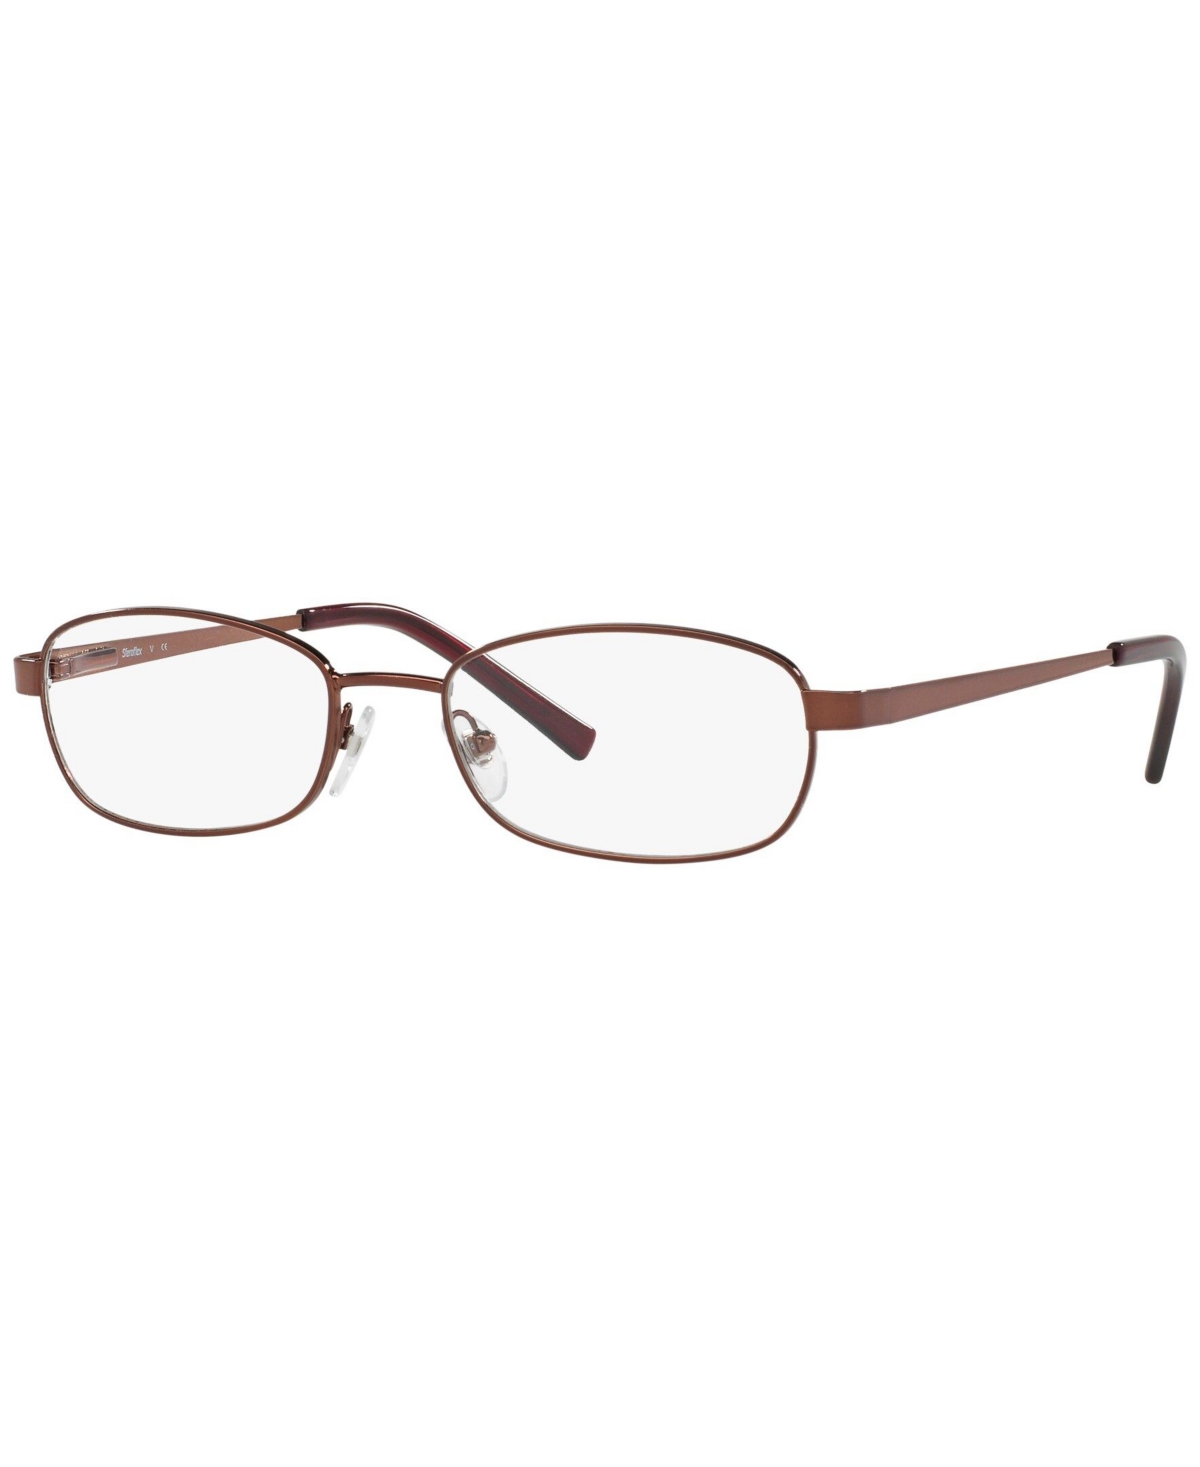 SF2591 Women's Rectangle Eyeglasses - Merlot